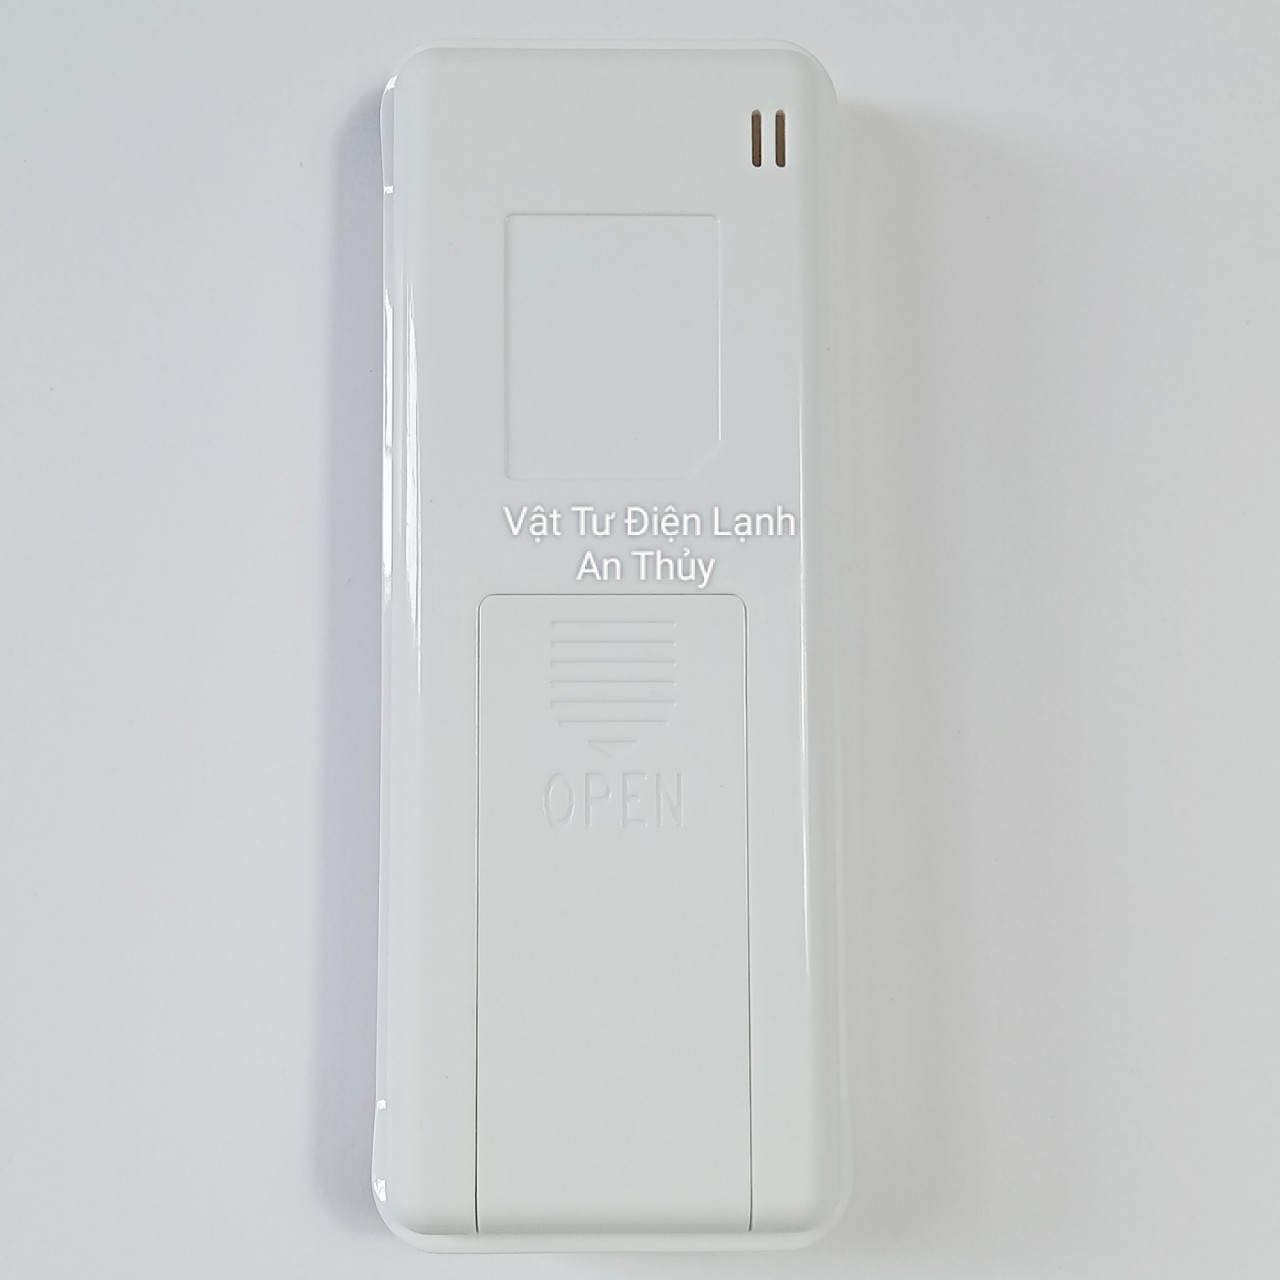 Remote máy lạnh cho Electrolux trắng nút nguồn xanh - Điều khiển máy lạnh Electrolux - Remote điều hòa Electrolux